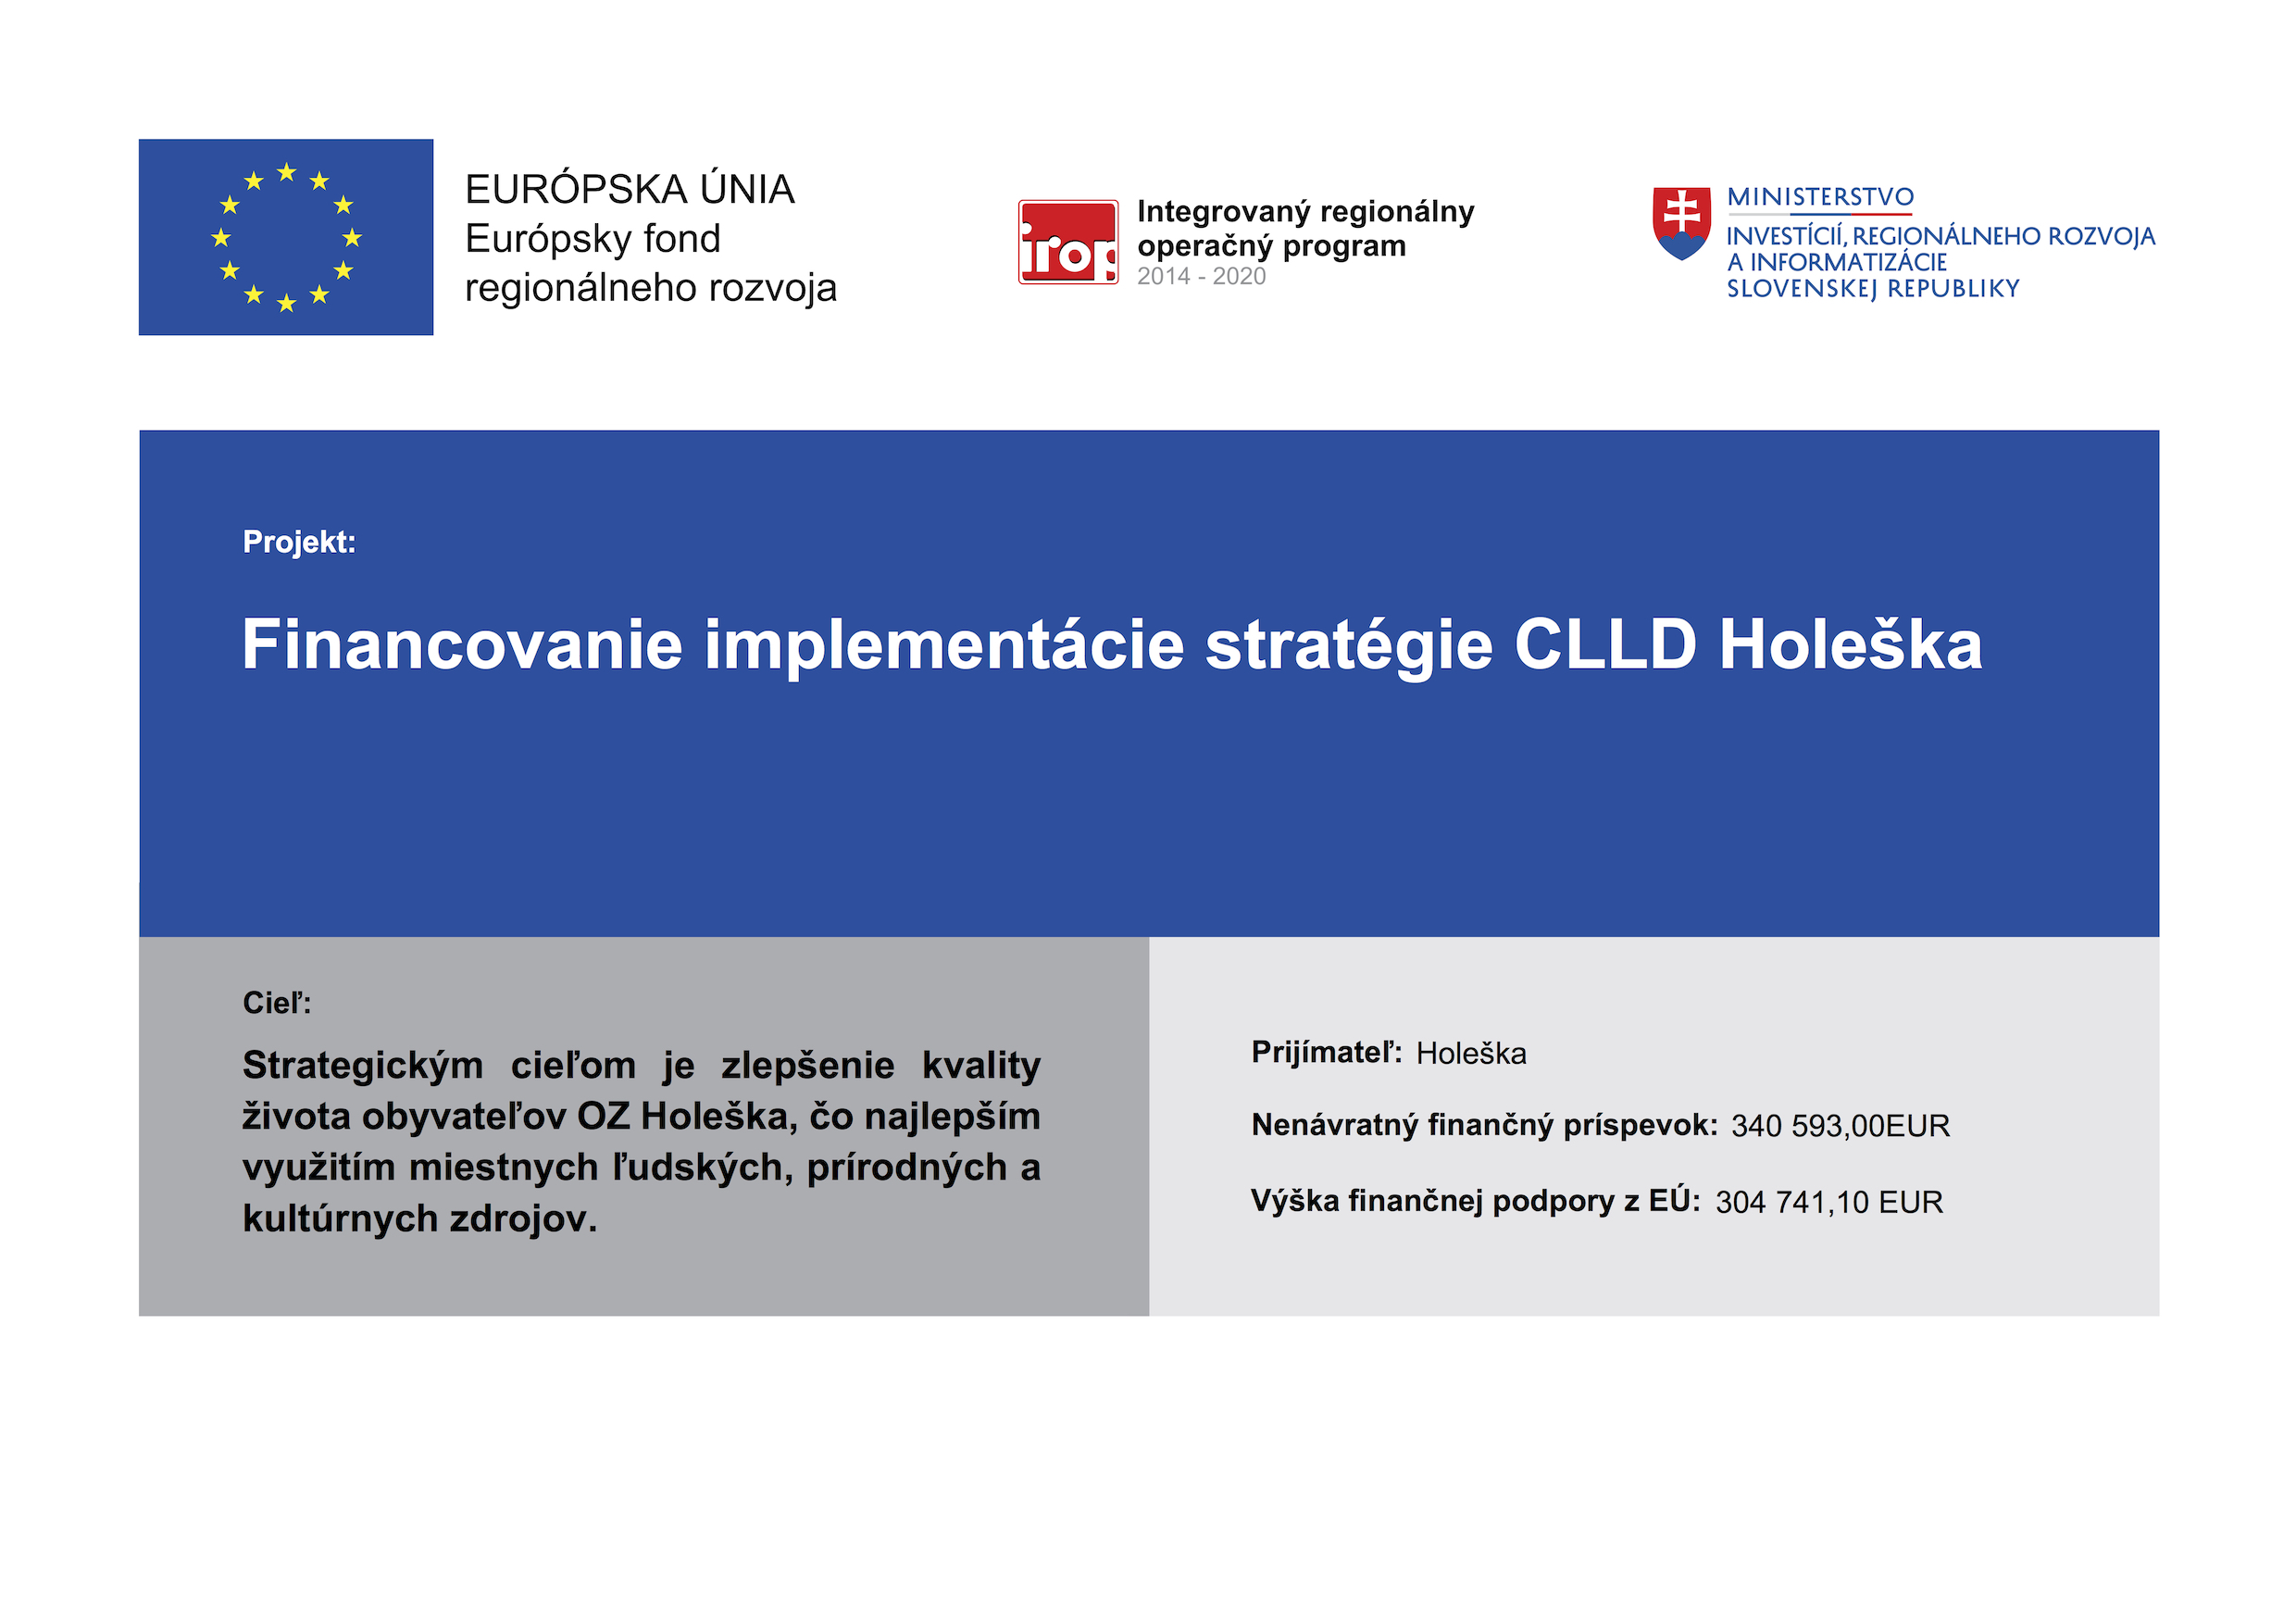 Financovanie implementácie stratégie CLLD Holeška